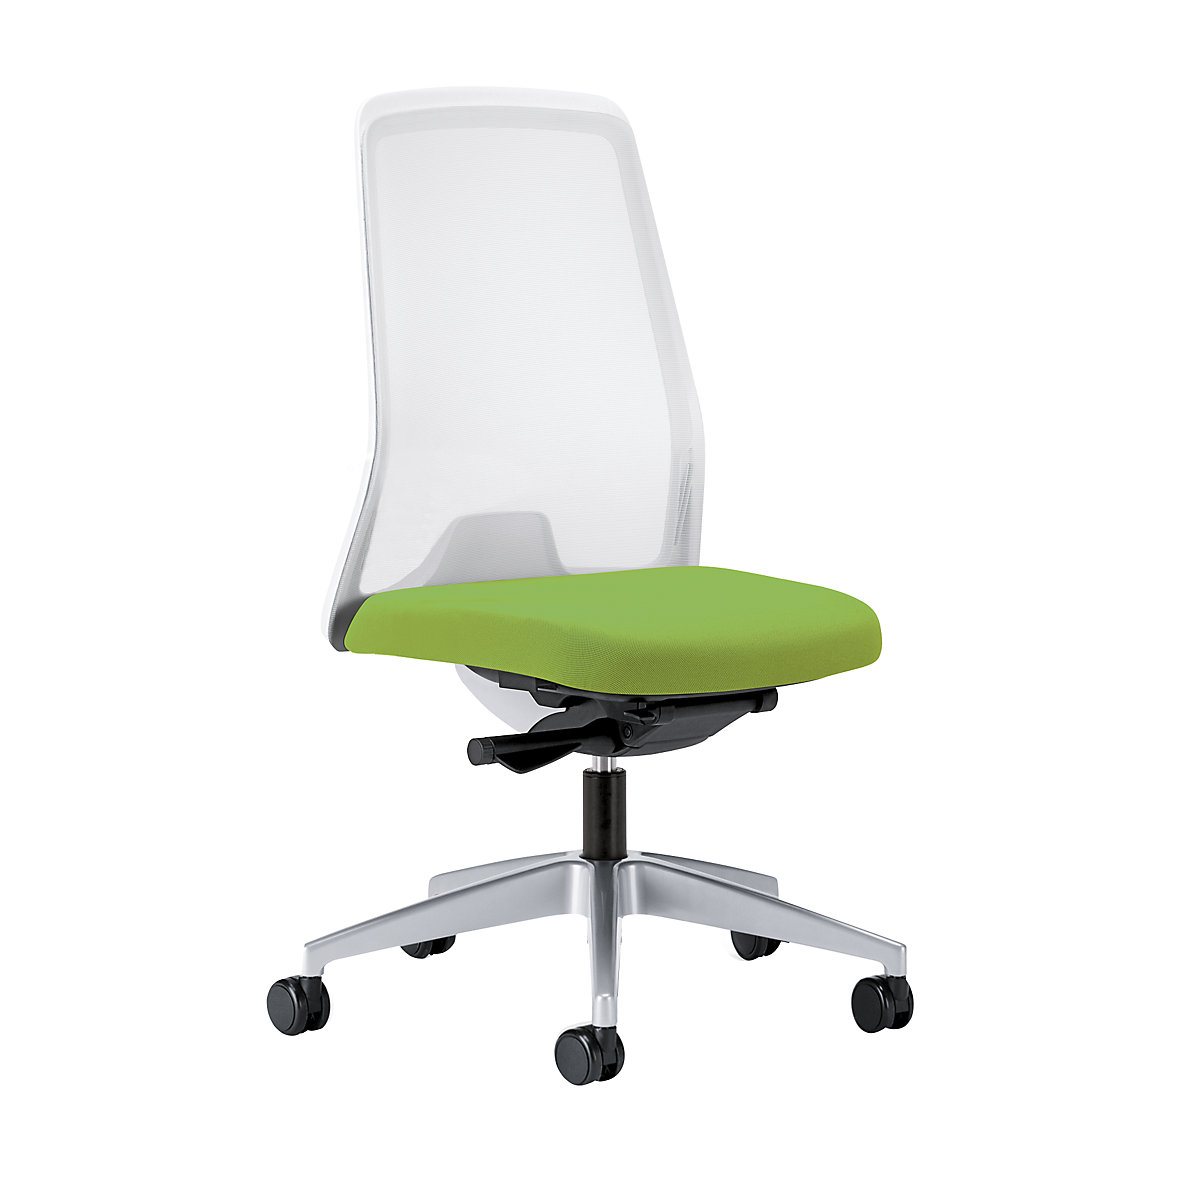 Krzesło obrotowe dla operatora EVERY, oparcie siatkowe, białe – interstuhl, szkielet brylantowo-srebrny, z miękkimi rolkami, żółto-zielony, głęb. siedziska 430 mm-6